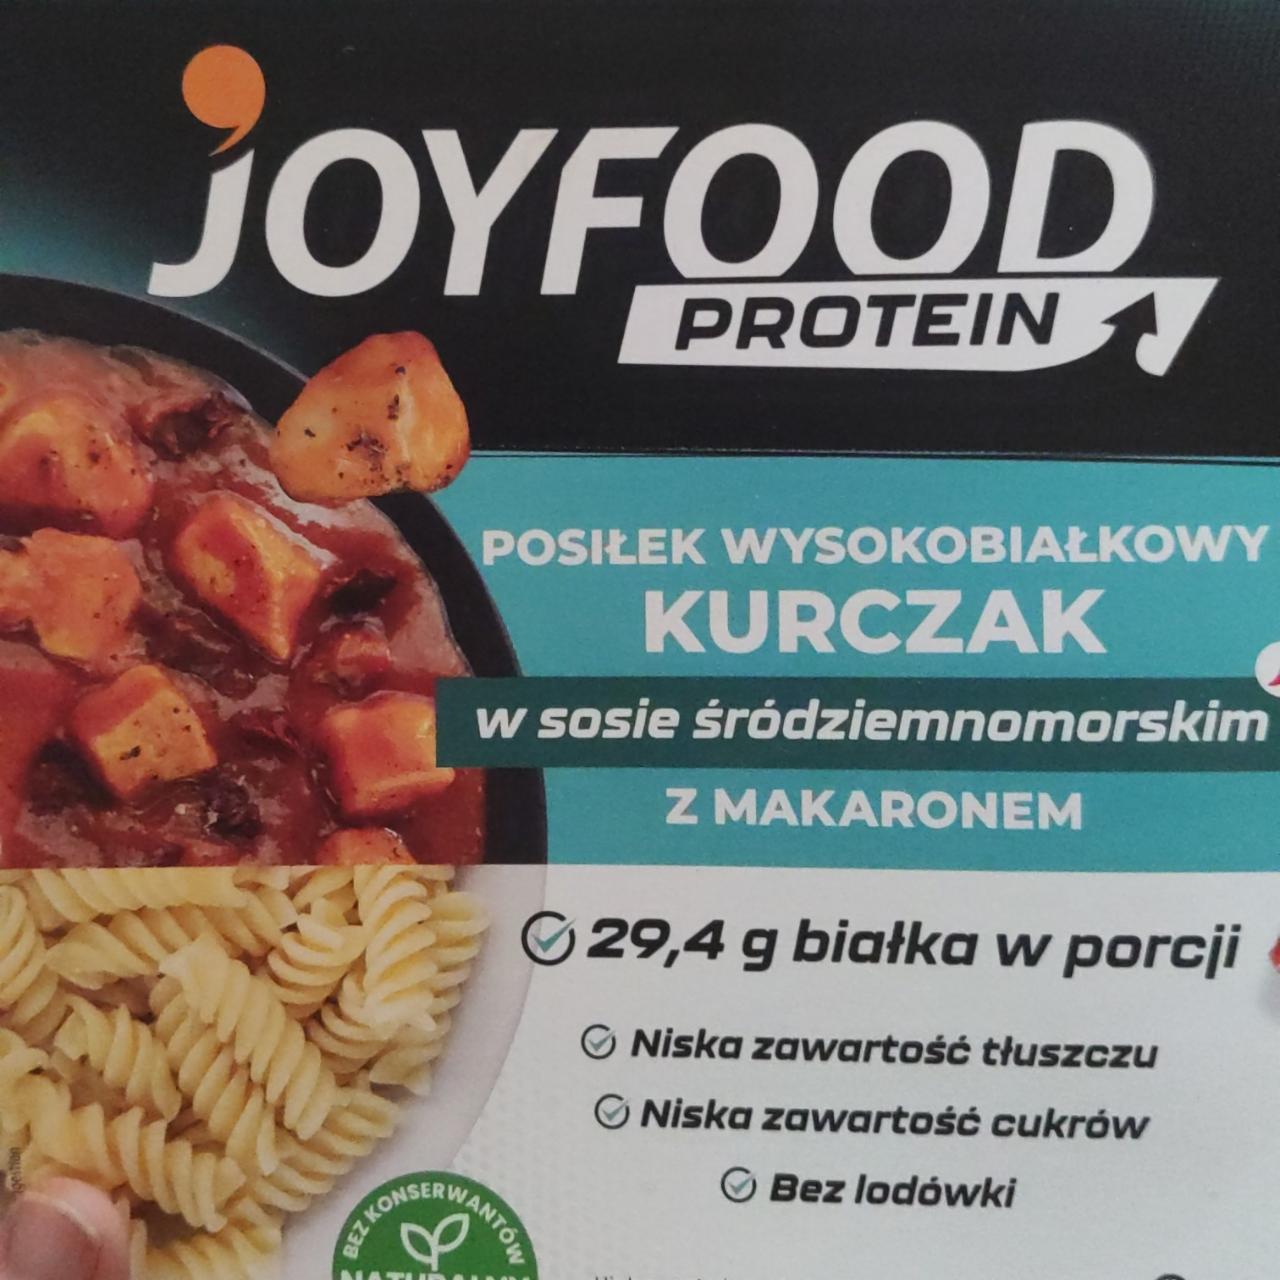 Фото - Posiłek wysokobiałkowy kurczak w sosie śródziemnomorskim z makaronem Joyfood protein